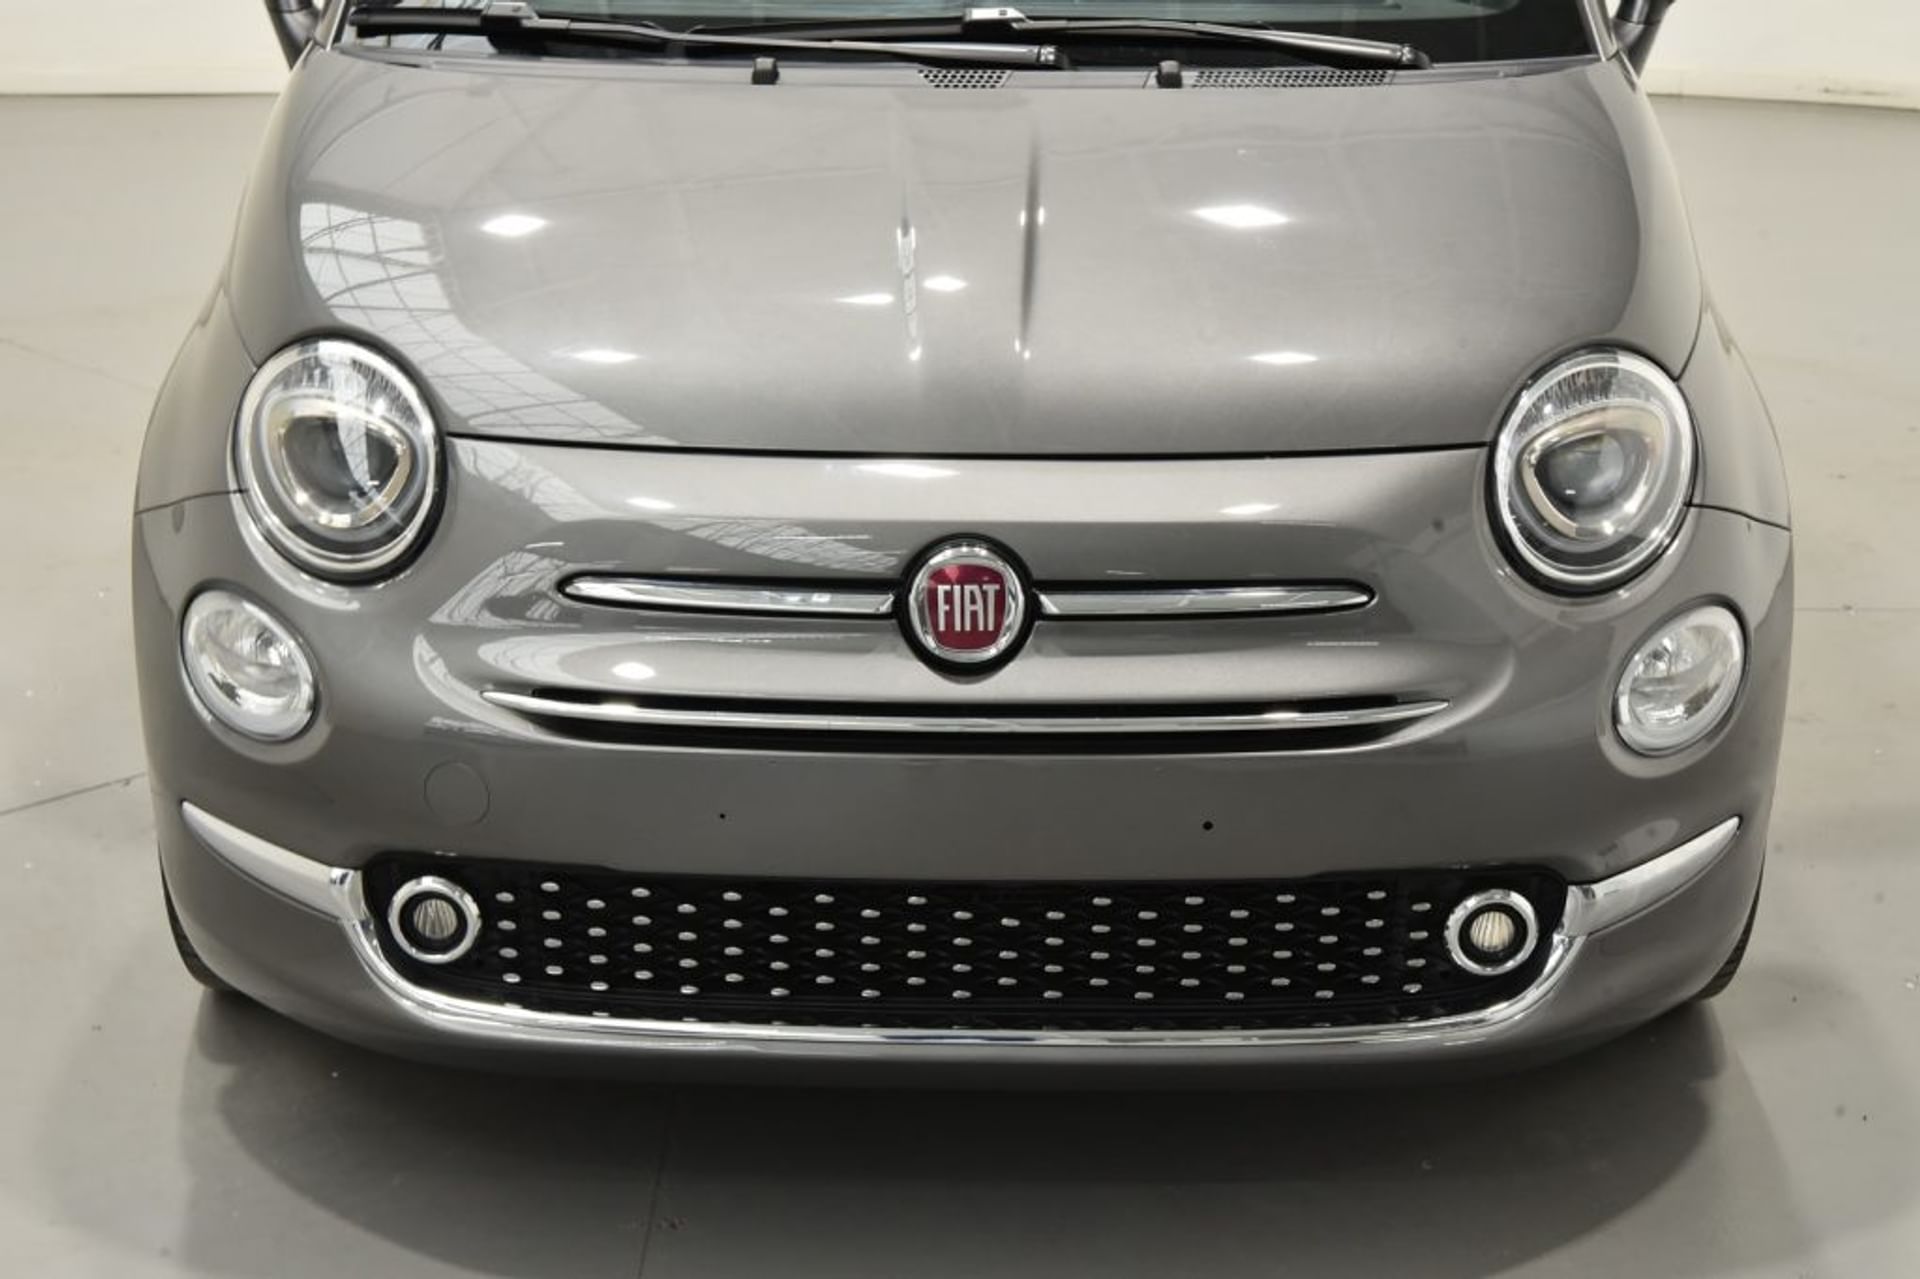 Fiat 1.2 - Anteriore